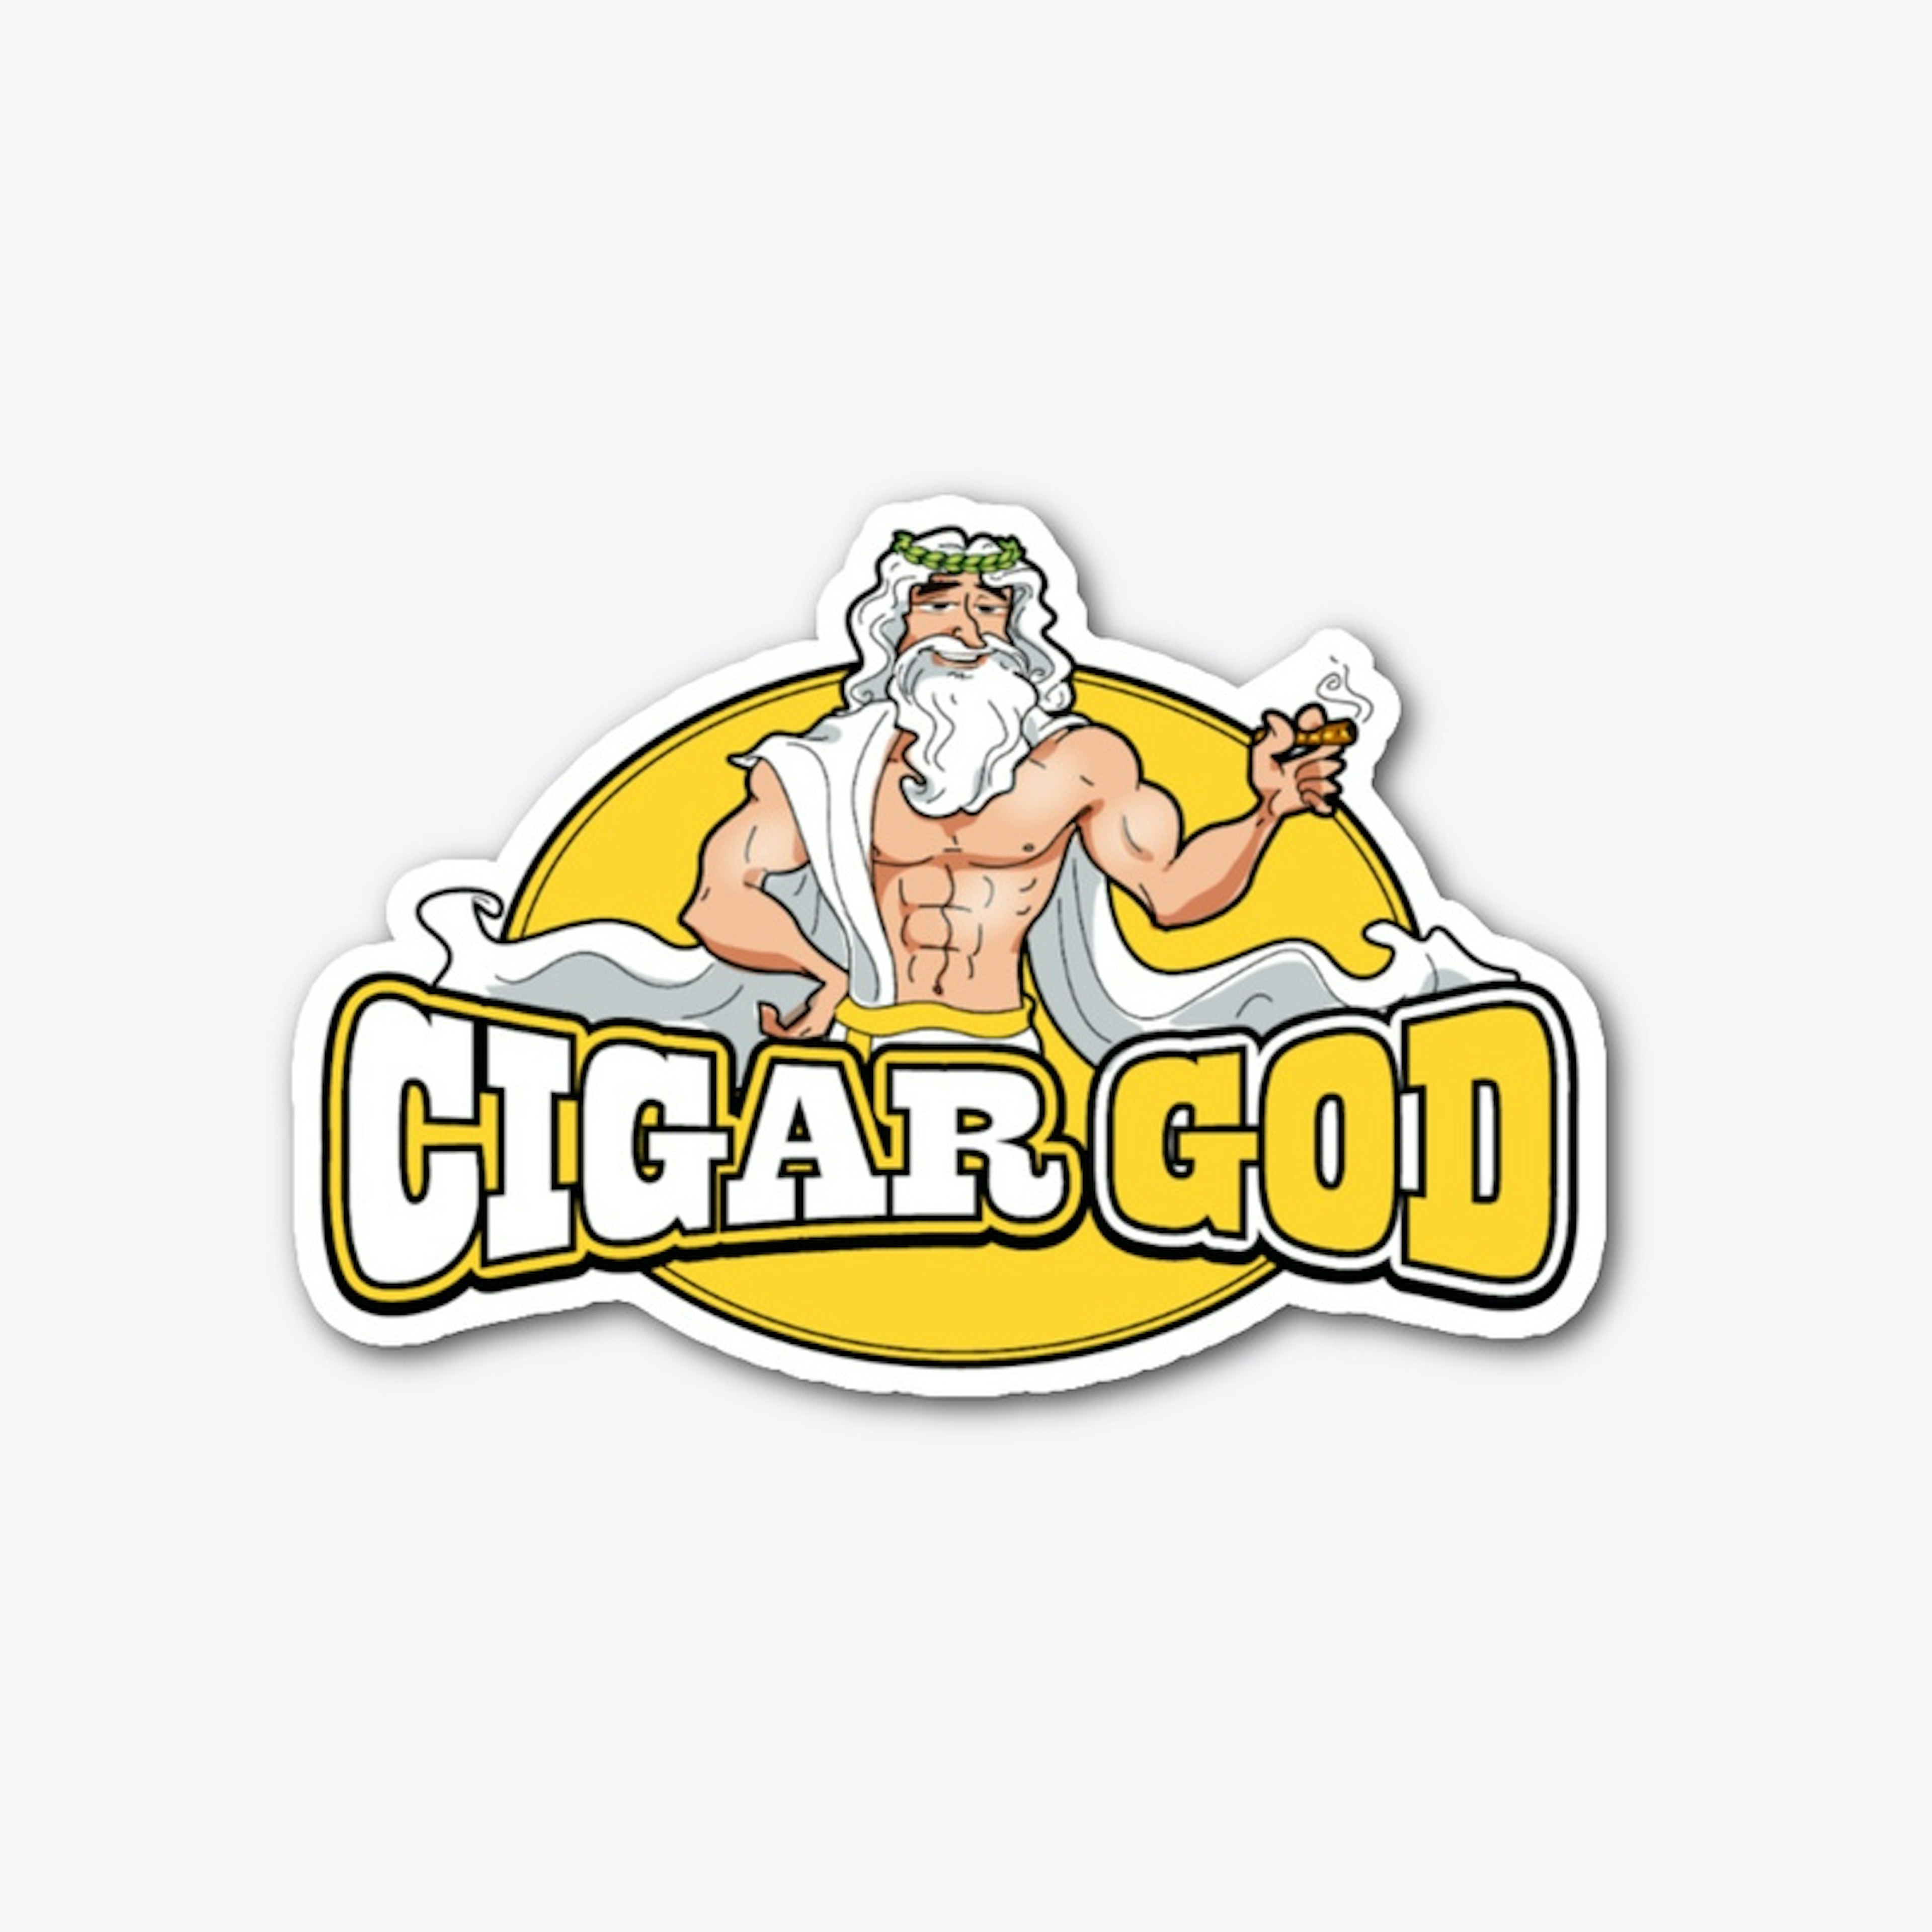 Cigar God